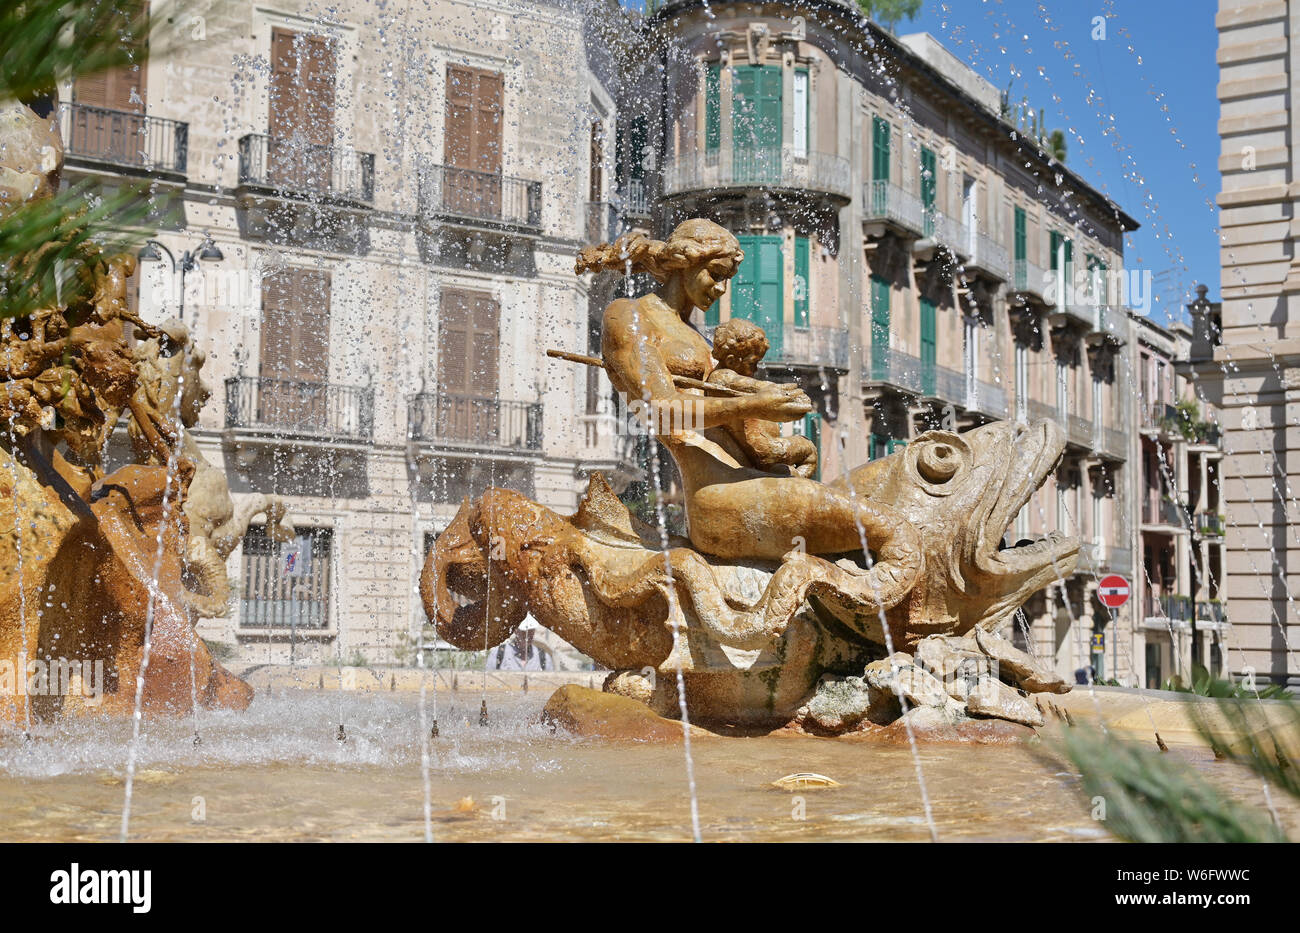 Construit par Giulio Moschetti en 1907, classic fontaine sur la Piazza Archimede, Sicile Ortigia dispose d'une statue de la déesse Diane. Banque D'Images